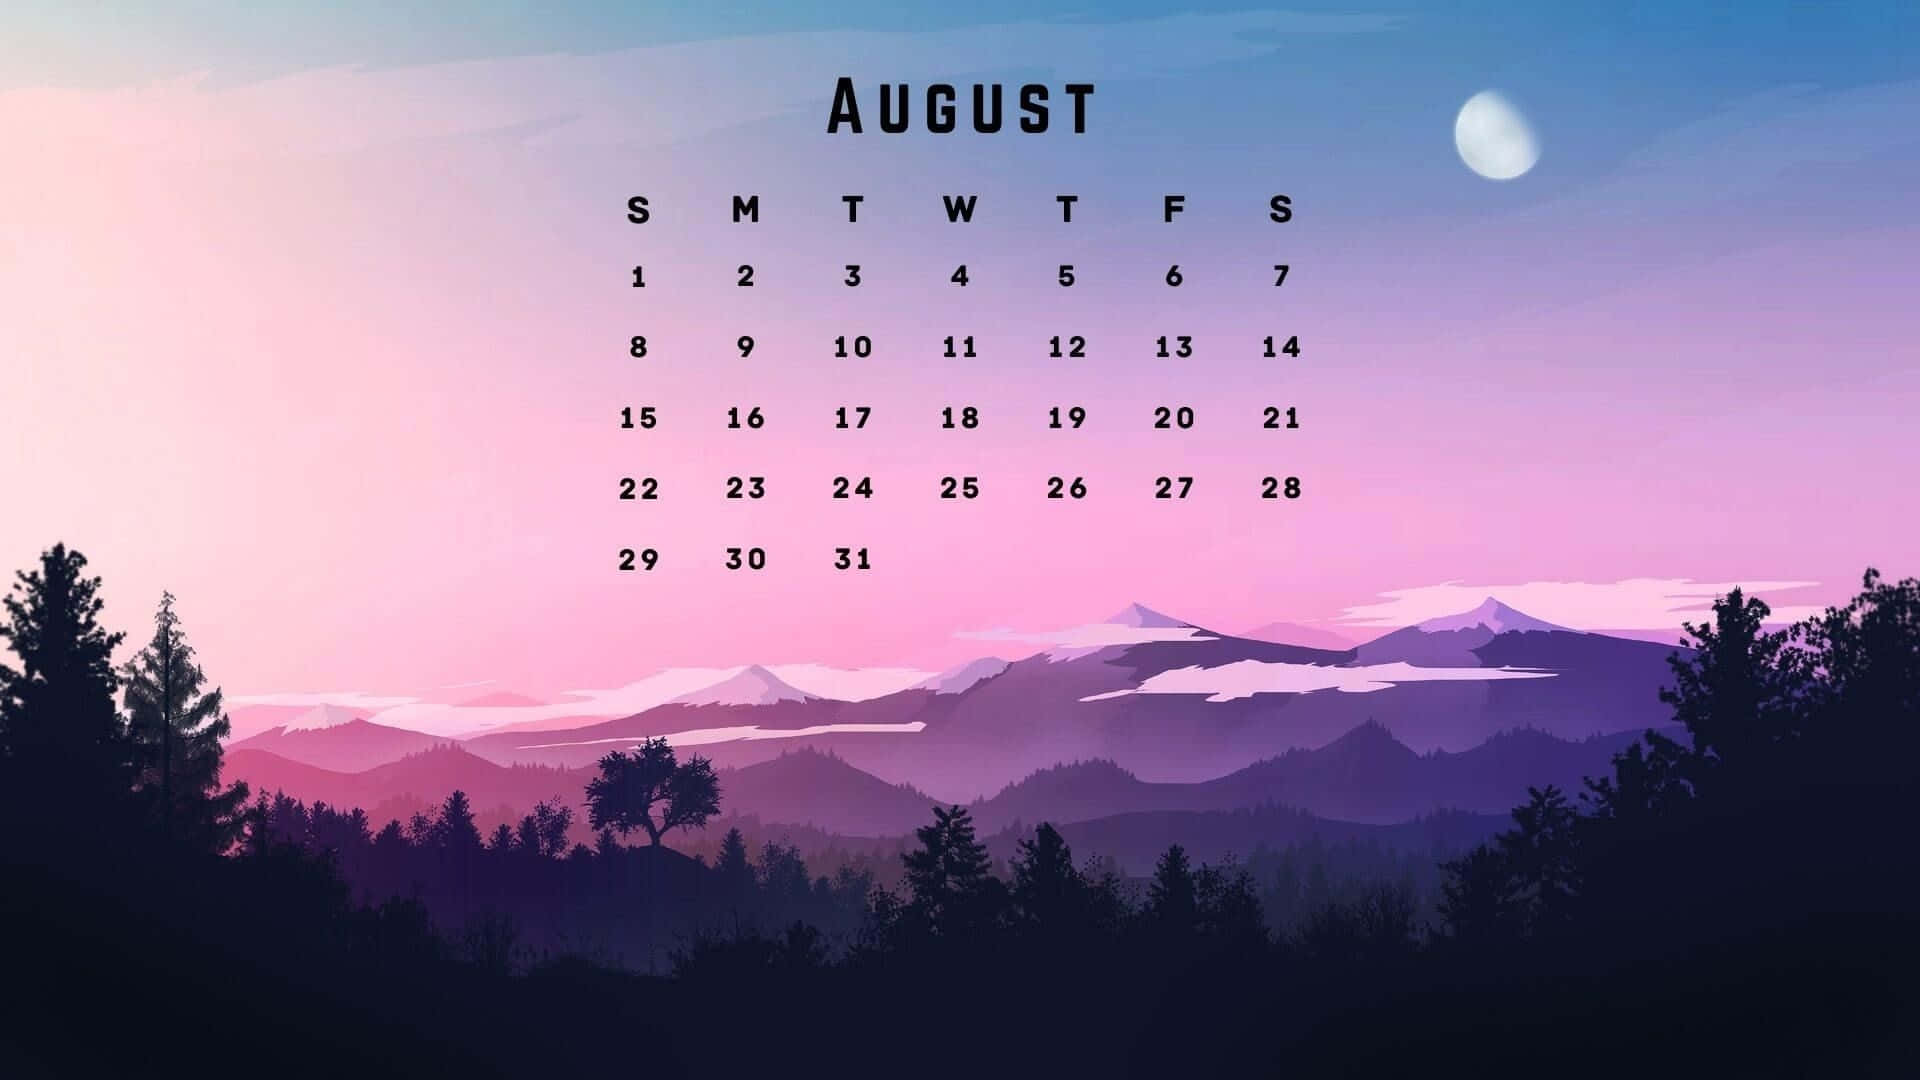 August Mountain Silhouette Calendar Wallpaper Wallpaper